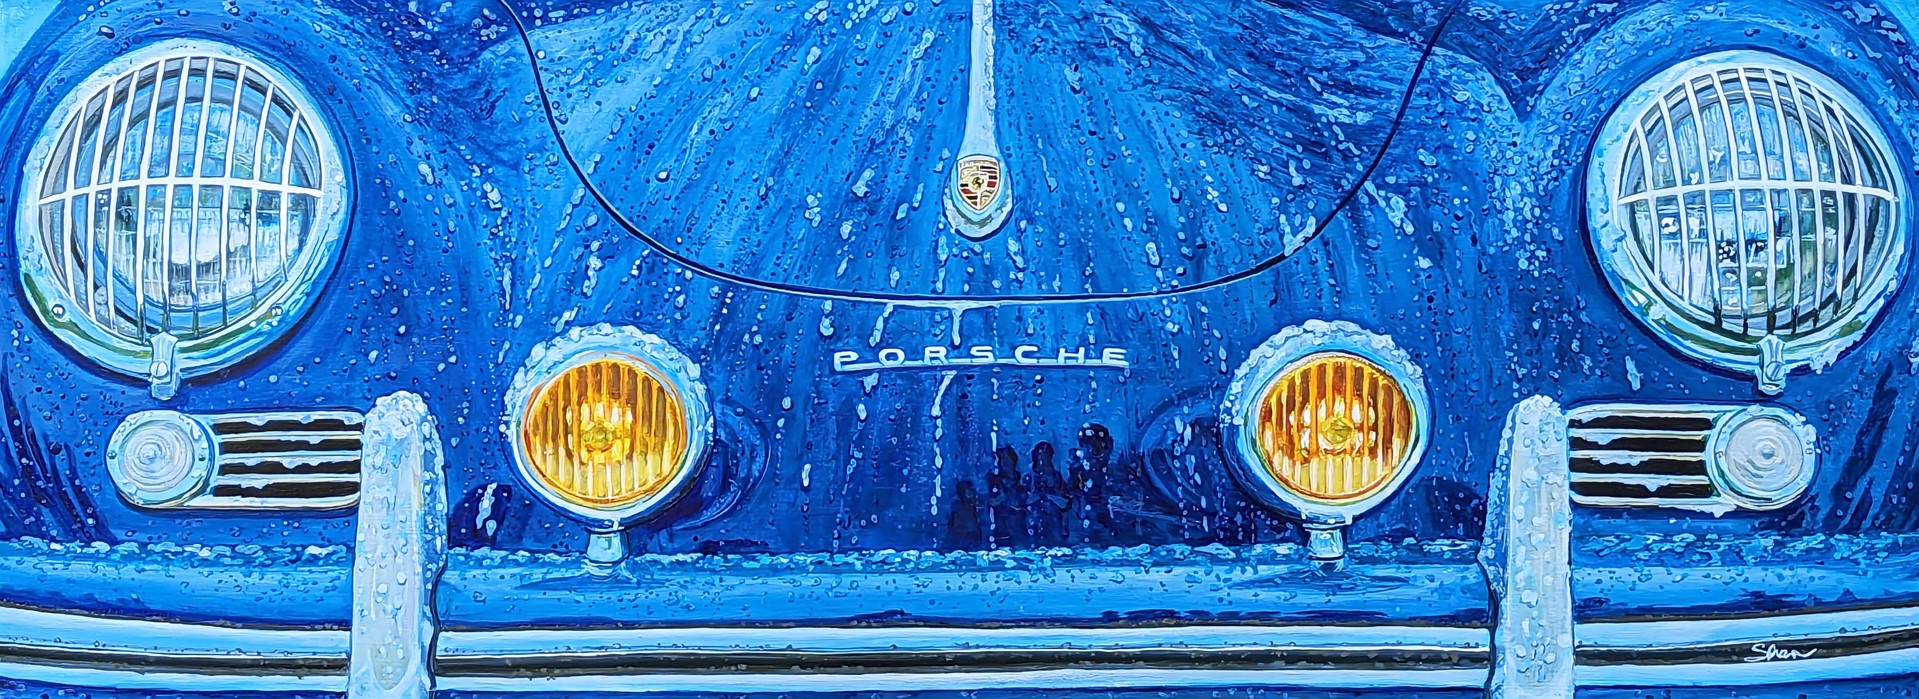 Azure Blue Porsche 356 by Shan Fannin